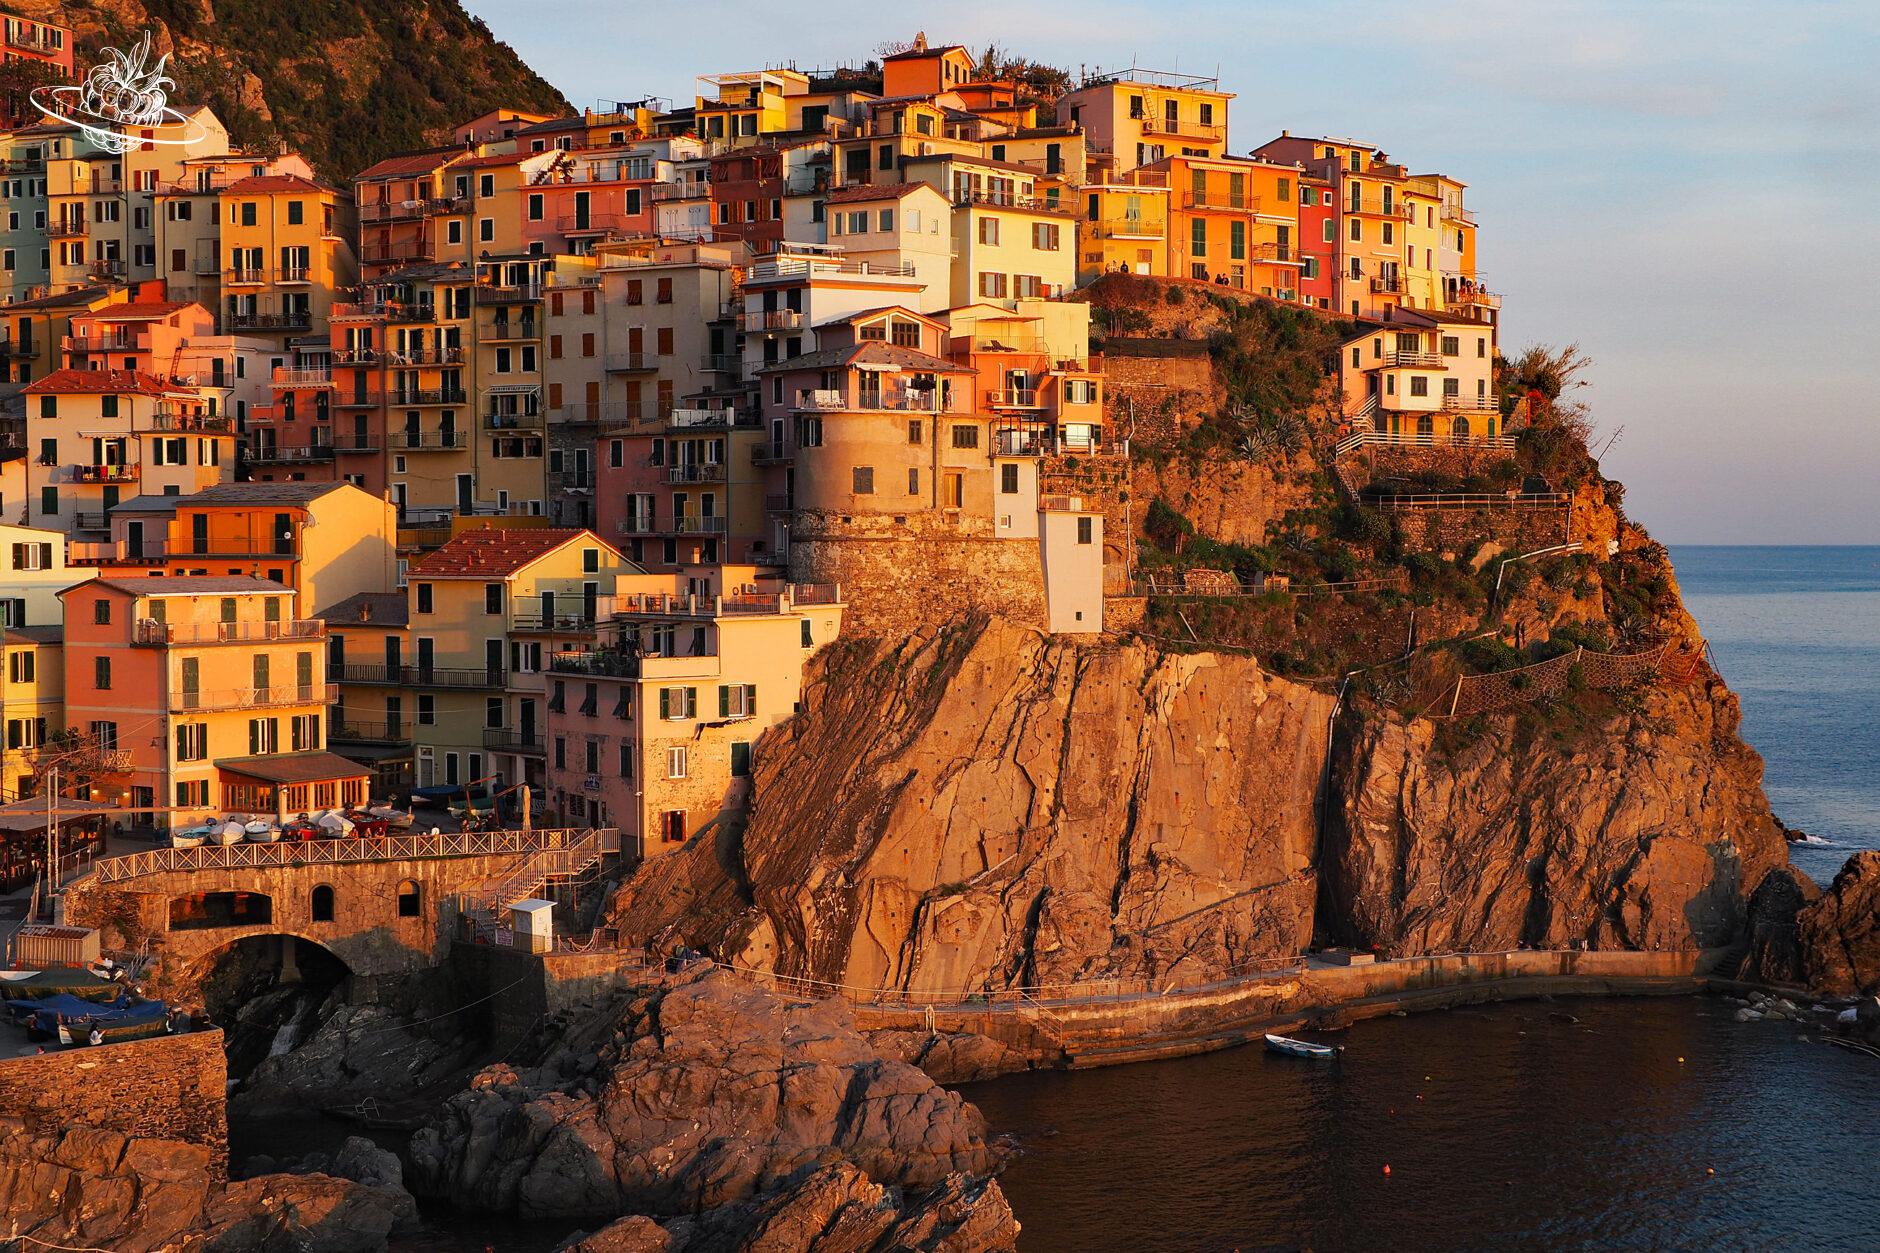 Vom Sonnenunterganggefärbtes Dorf in den Cinque Terre